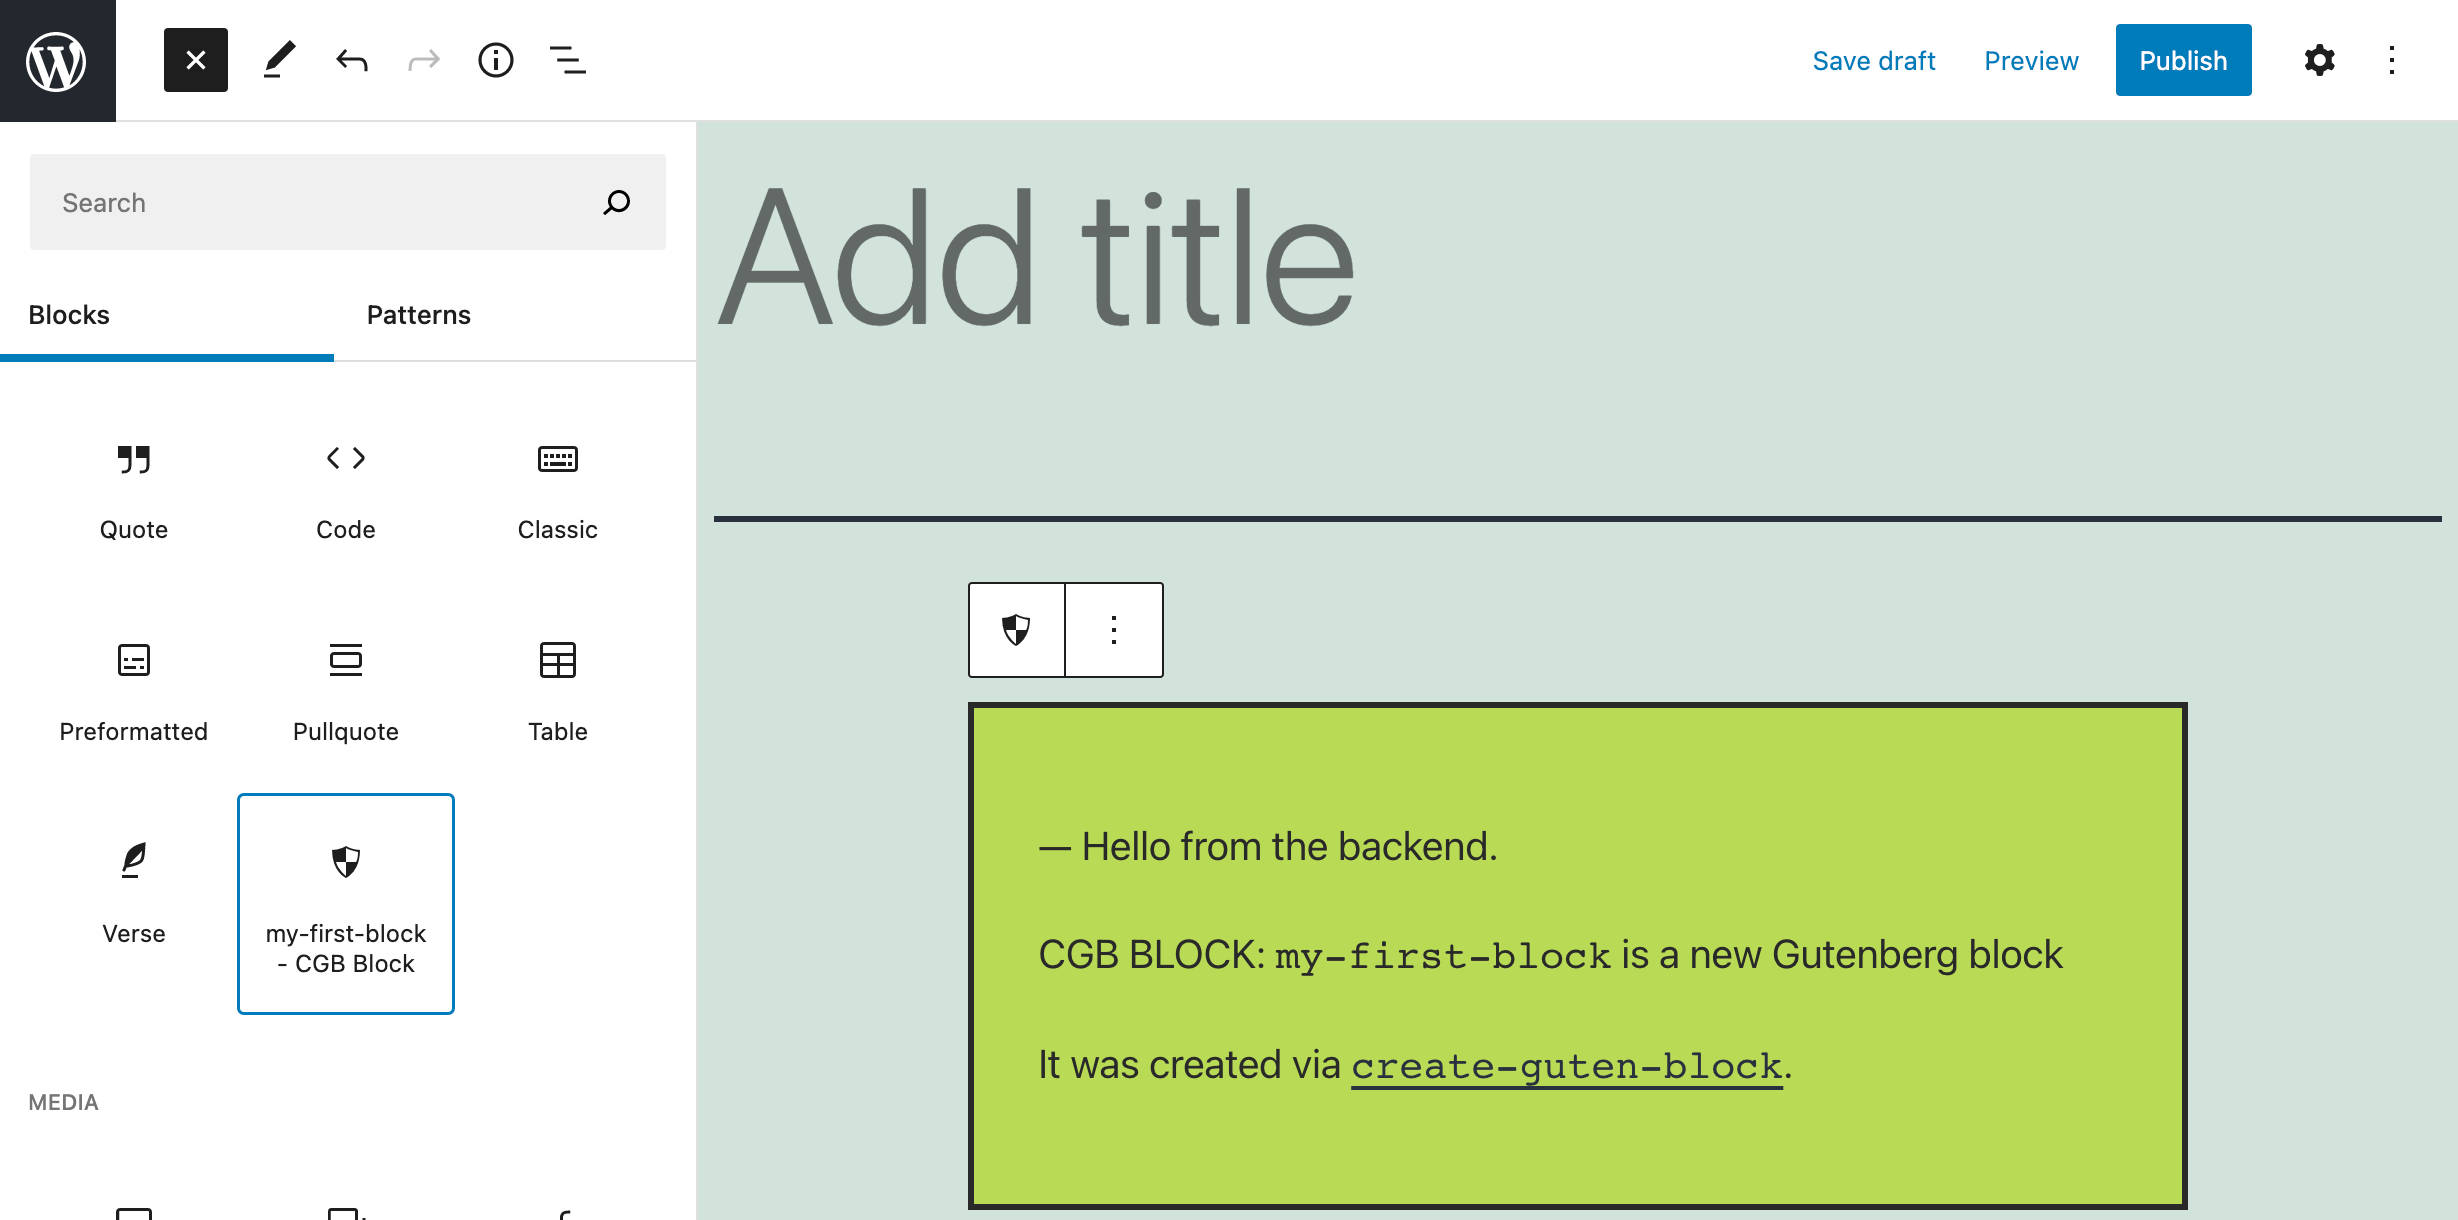 Een nieuw blok gemaakt met create-guten-block.